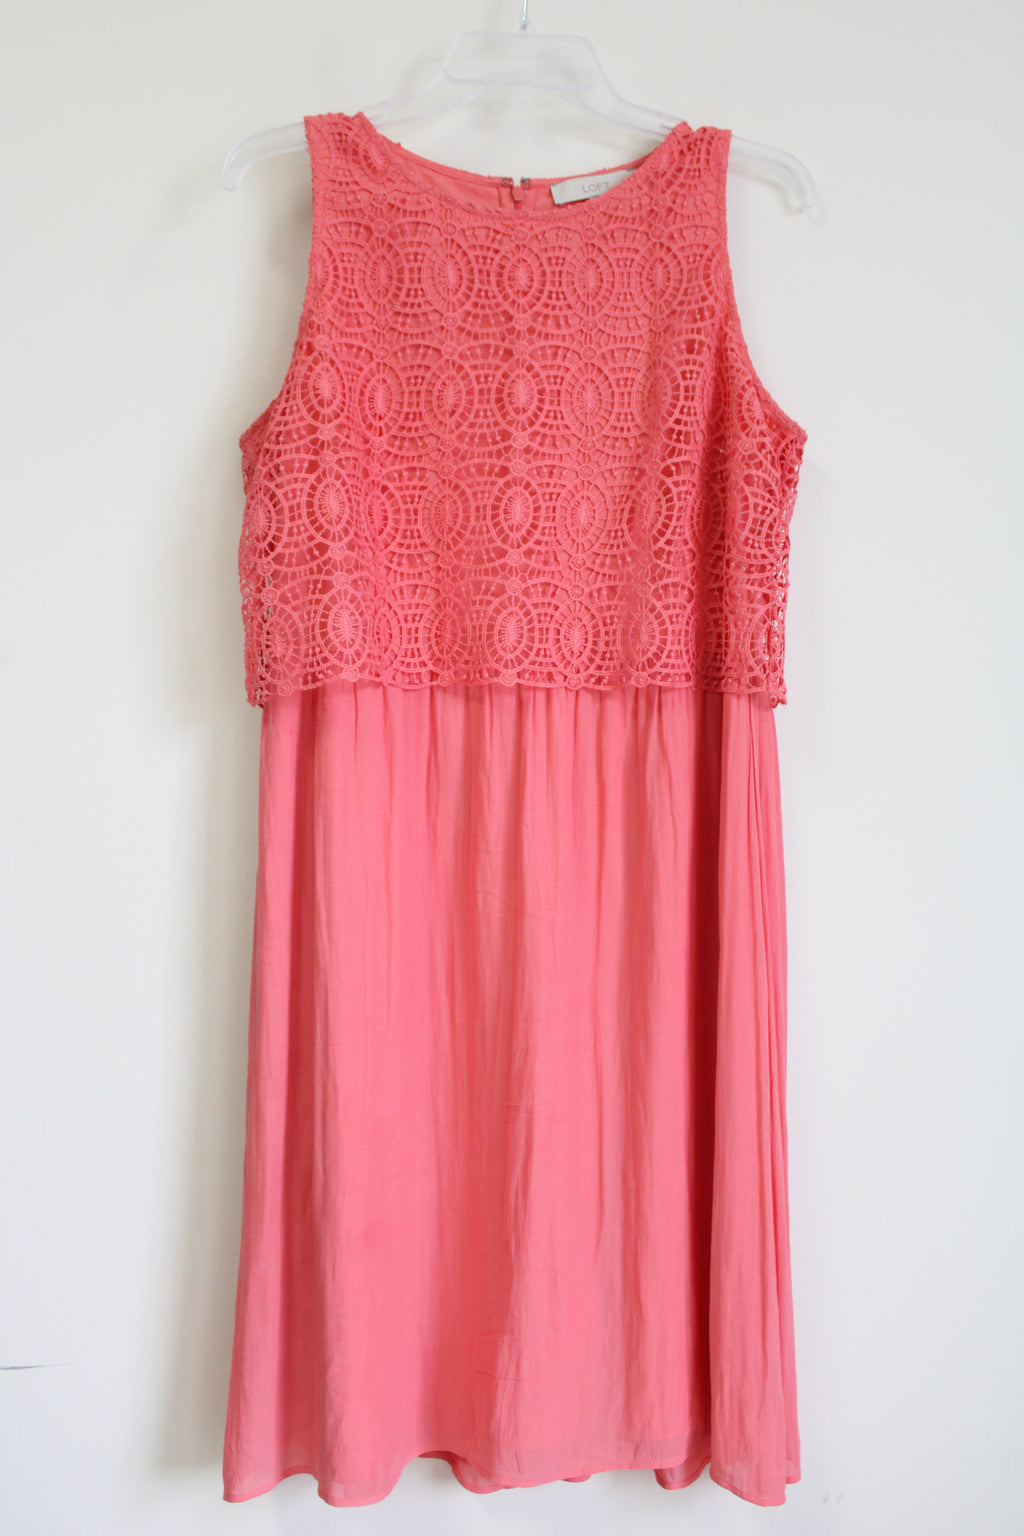 LOFT Pink Lace Top Coral Dress | 12